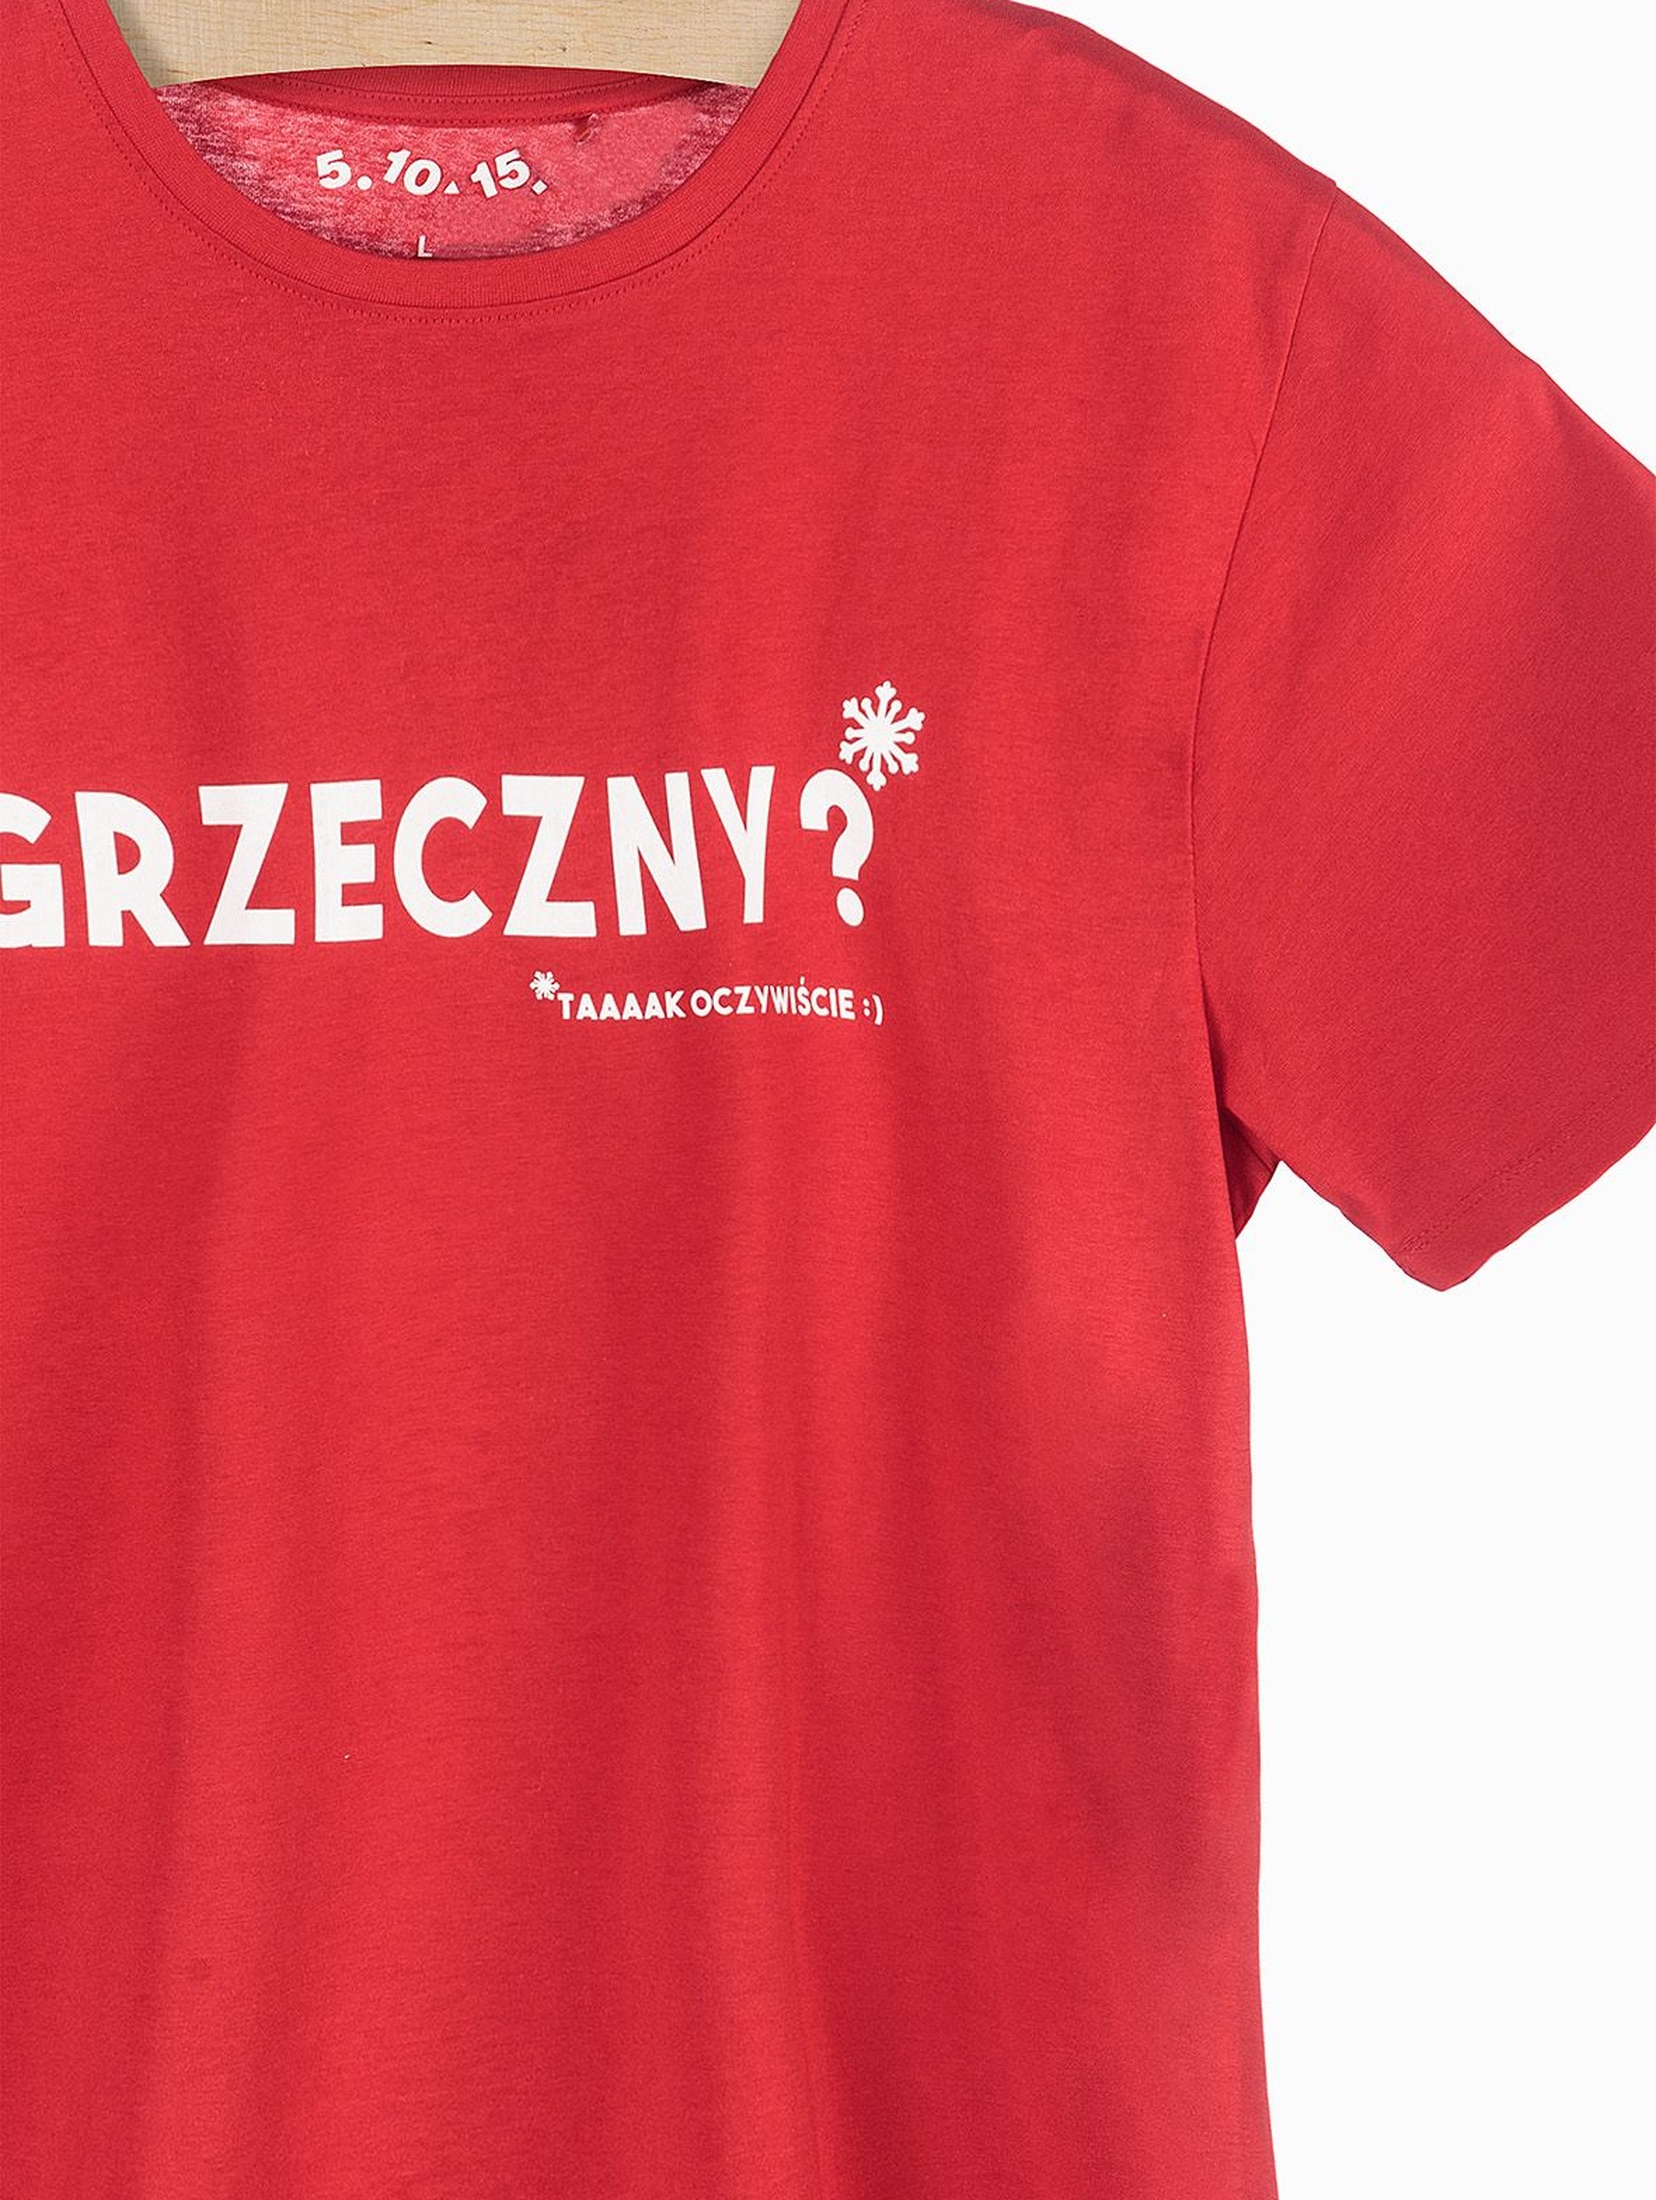 T-shirt męski z polskimi napisami-czarwony